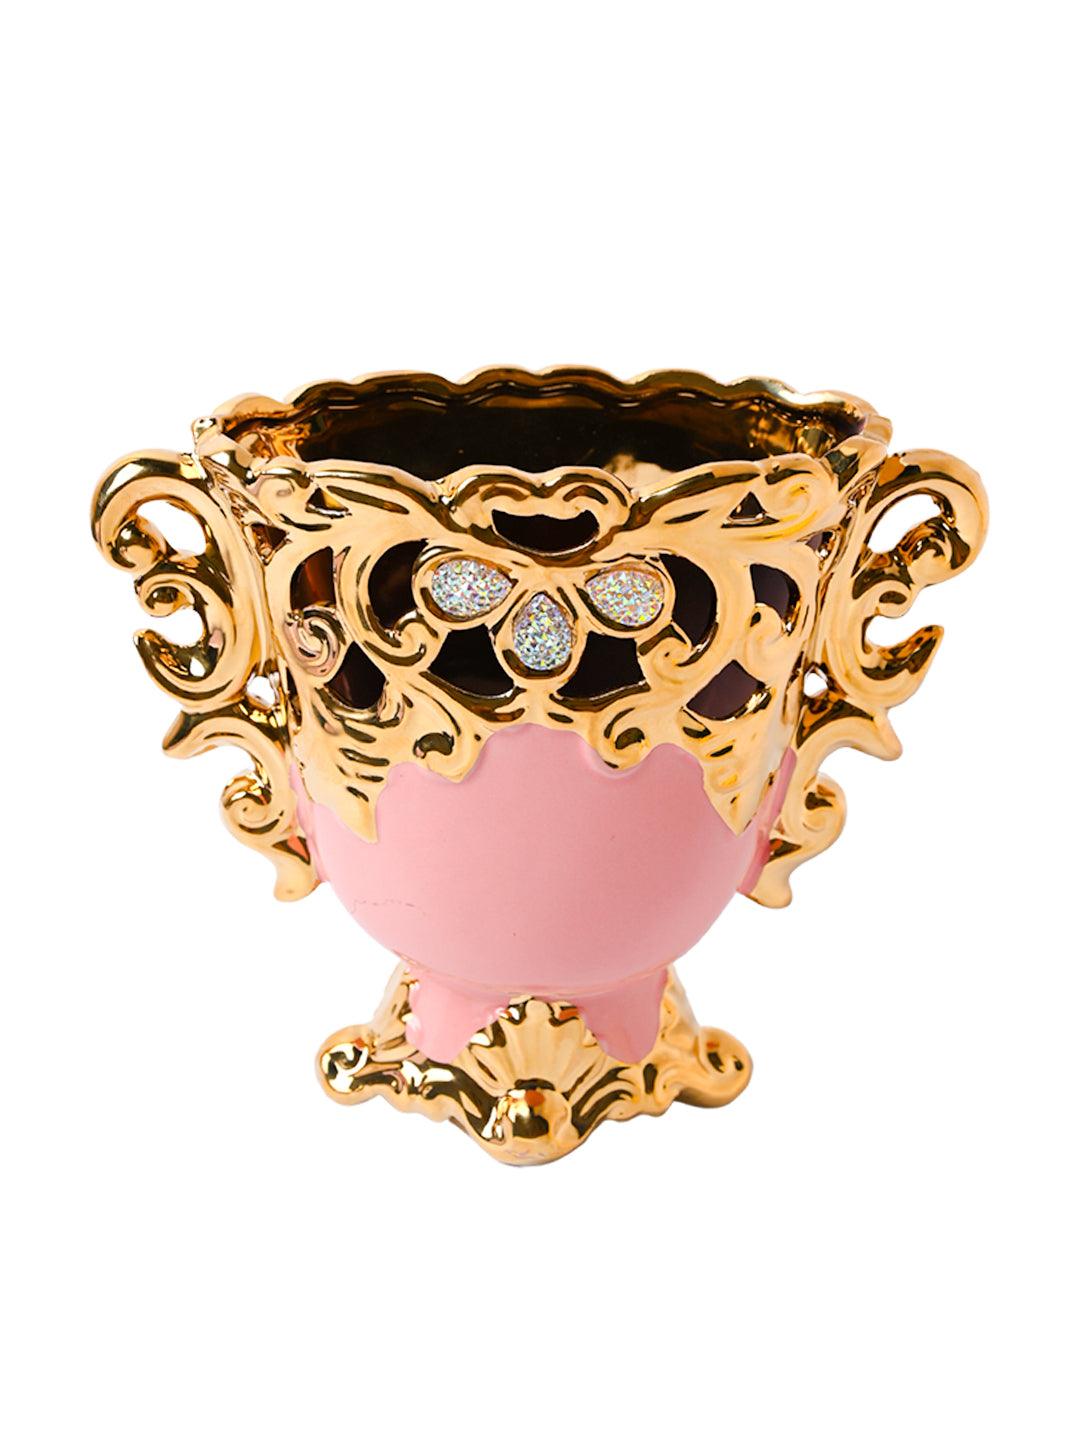 Vintage Trophy Cup Vase - MARKET99